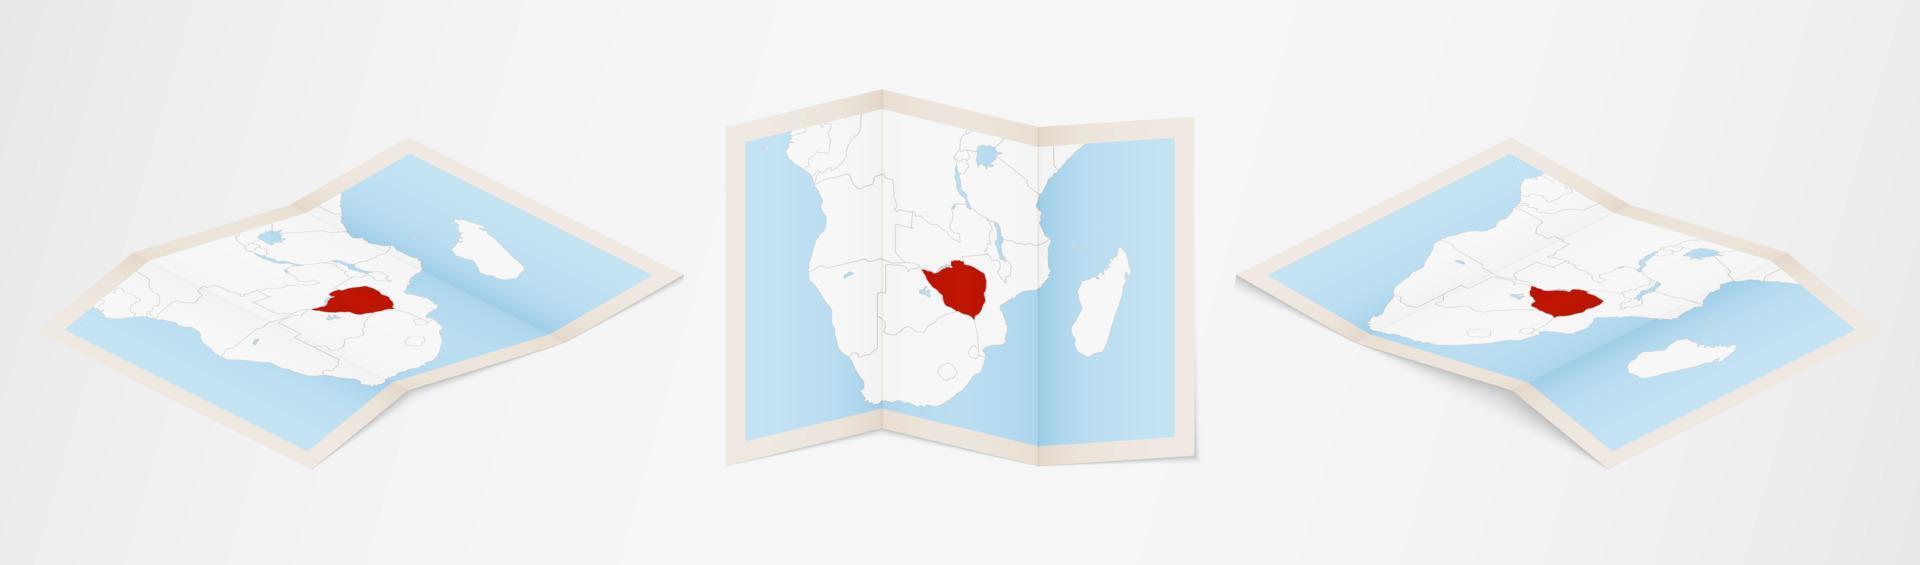 mapa dobrado do zimbabué em três versões diferentes. vetor